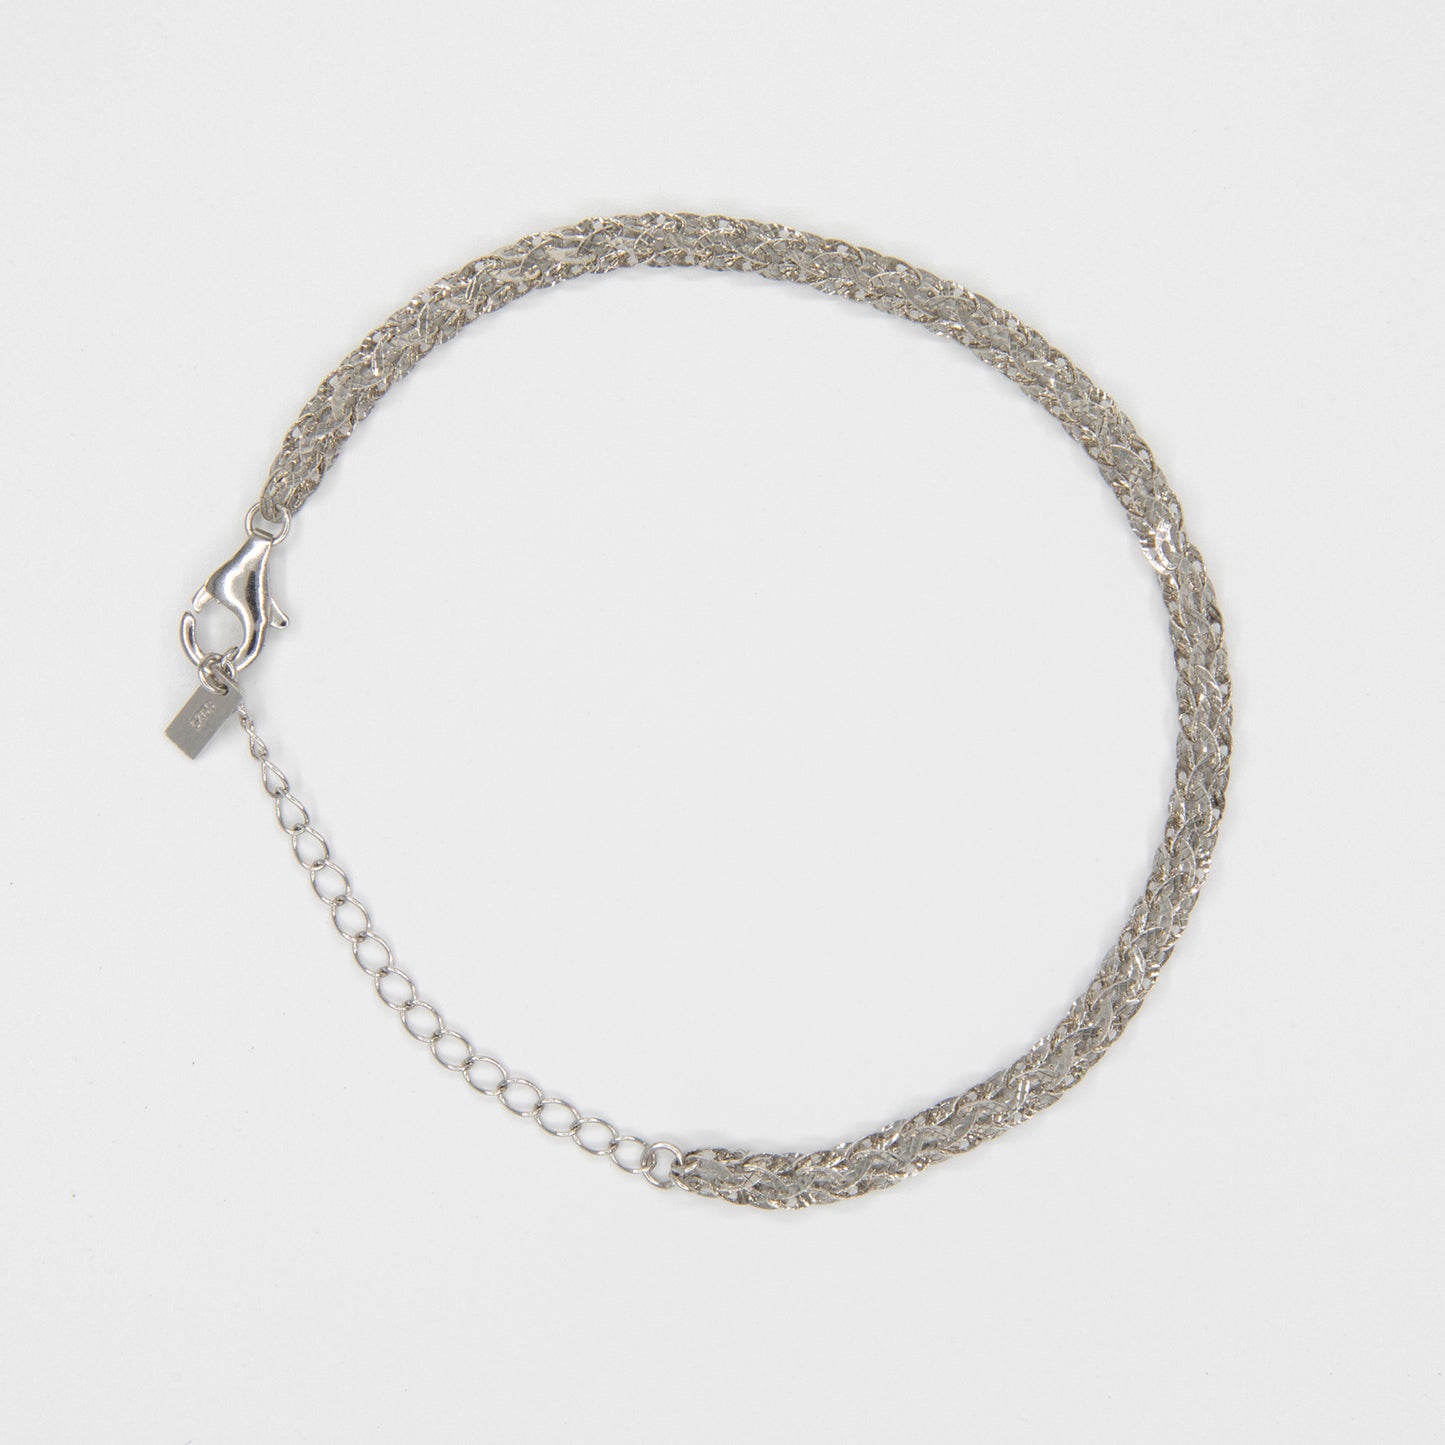 Twisty Bracelet : 925 Sterling Silver